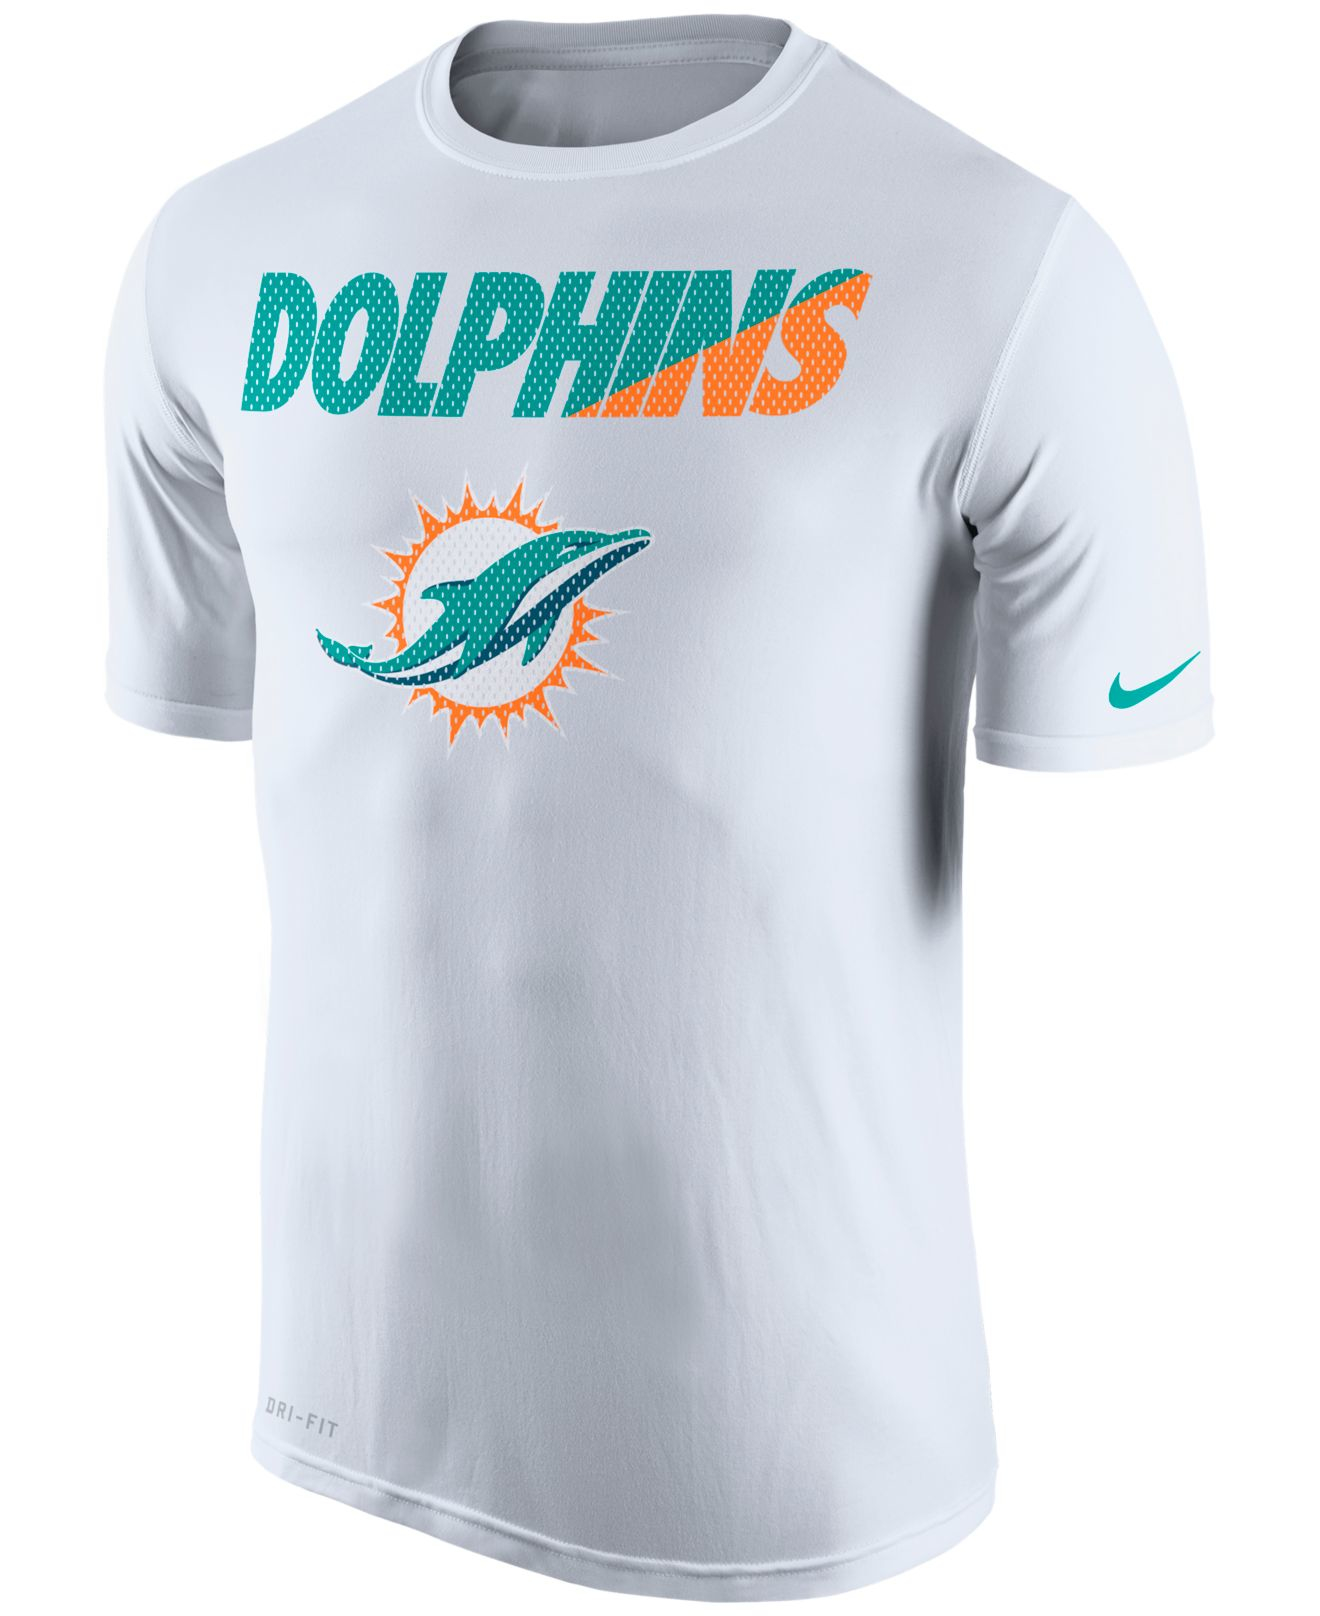 Miami Dolphins Shirt / Miami Dolphins T Shirt | Vintage Miami Dolphins ...